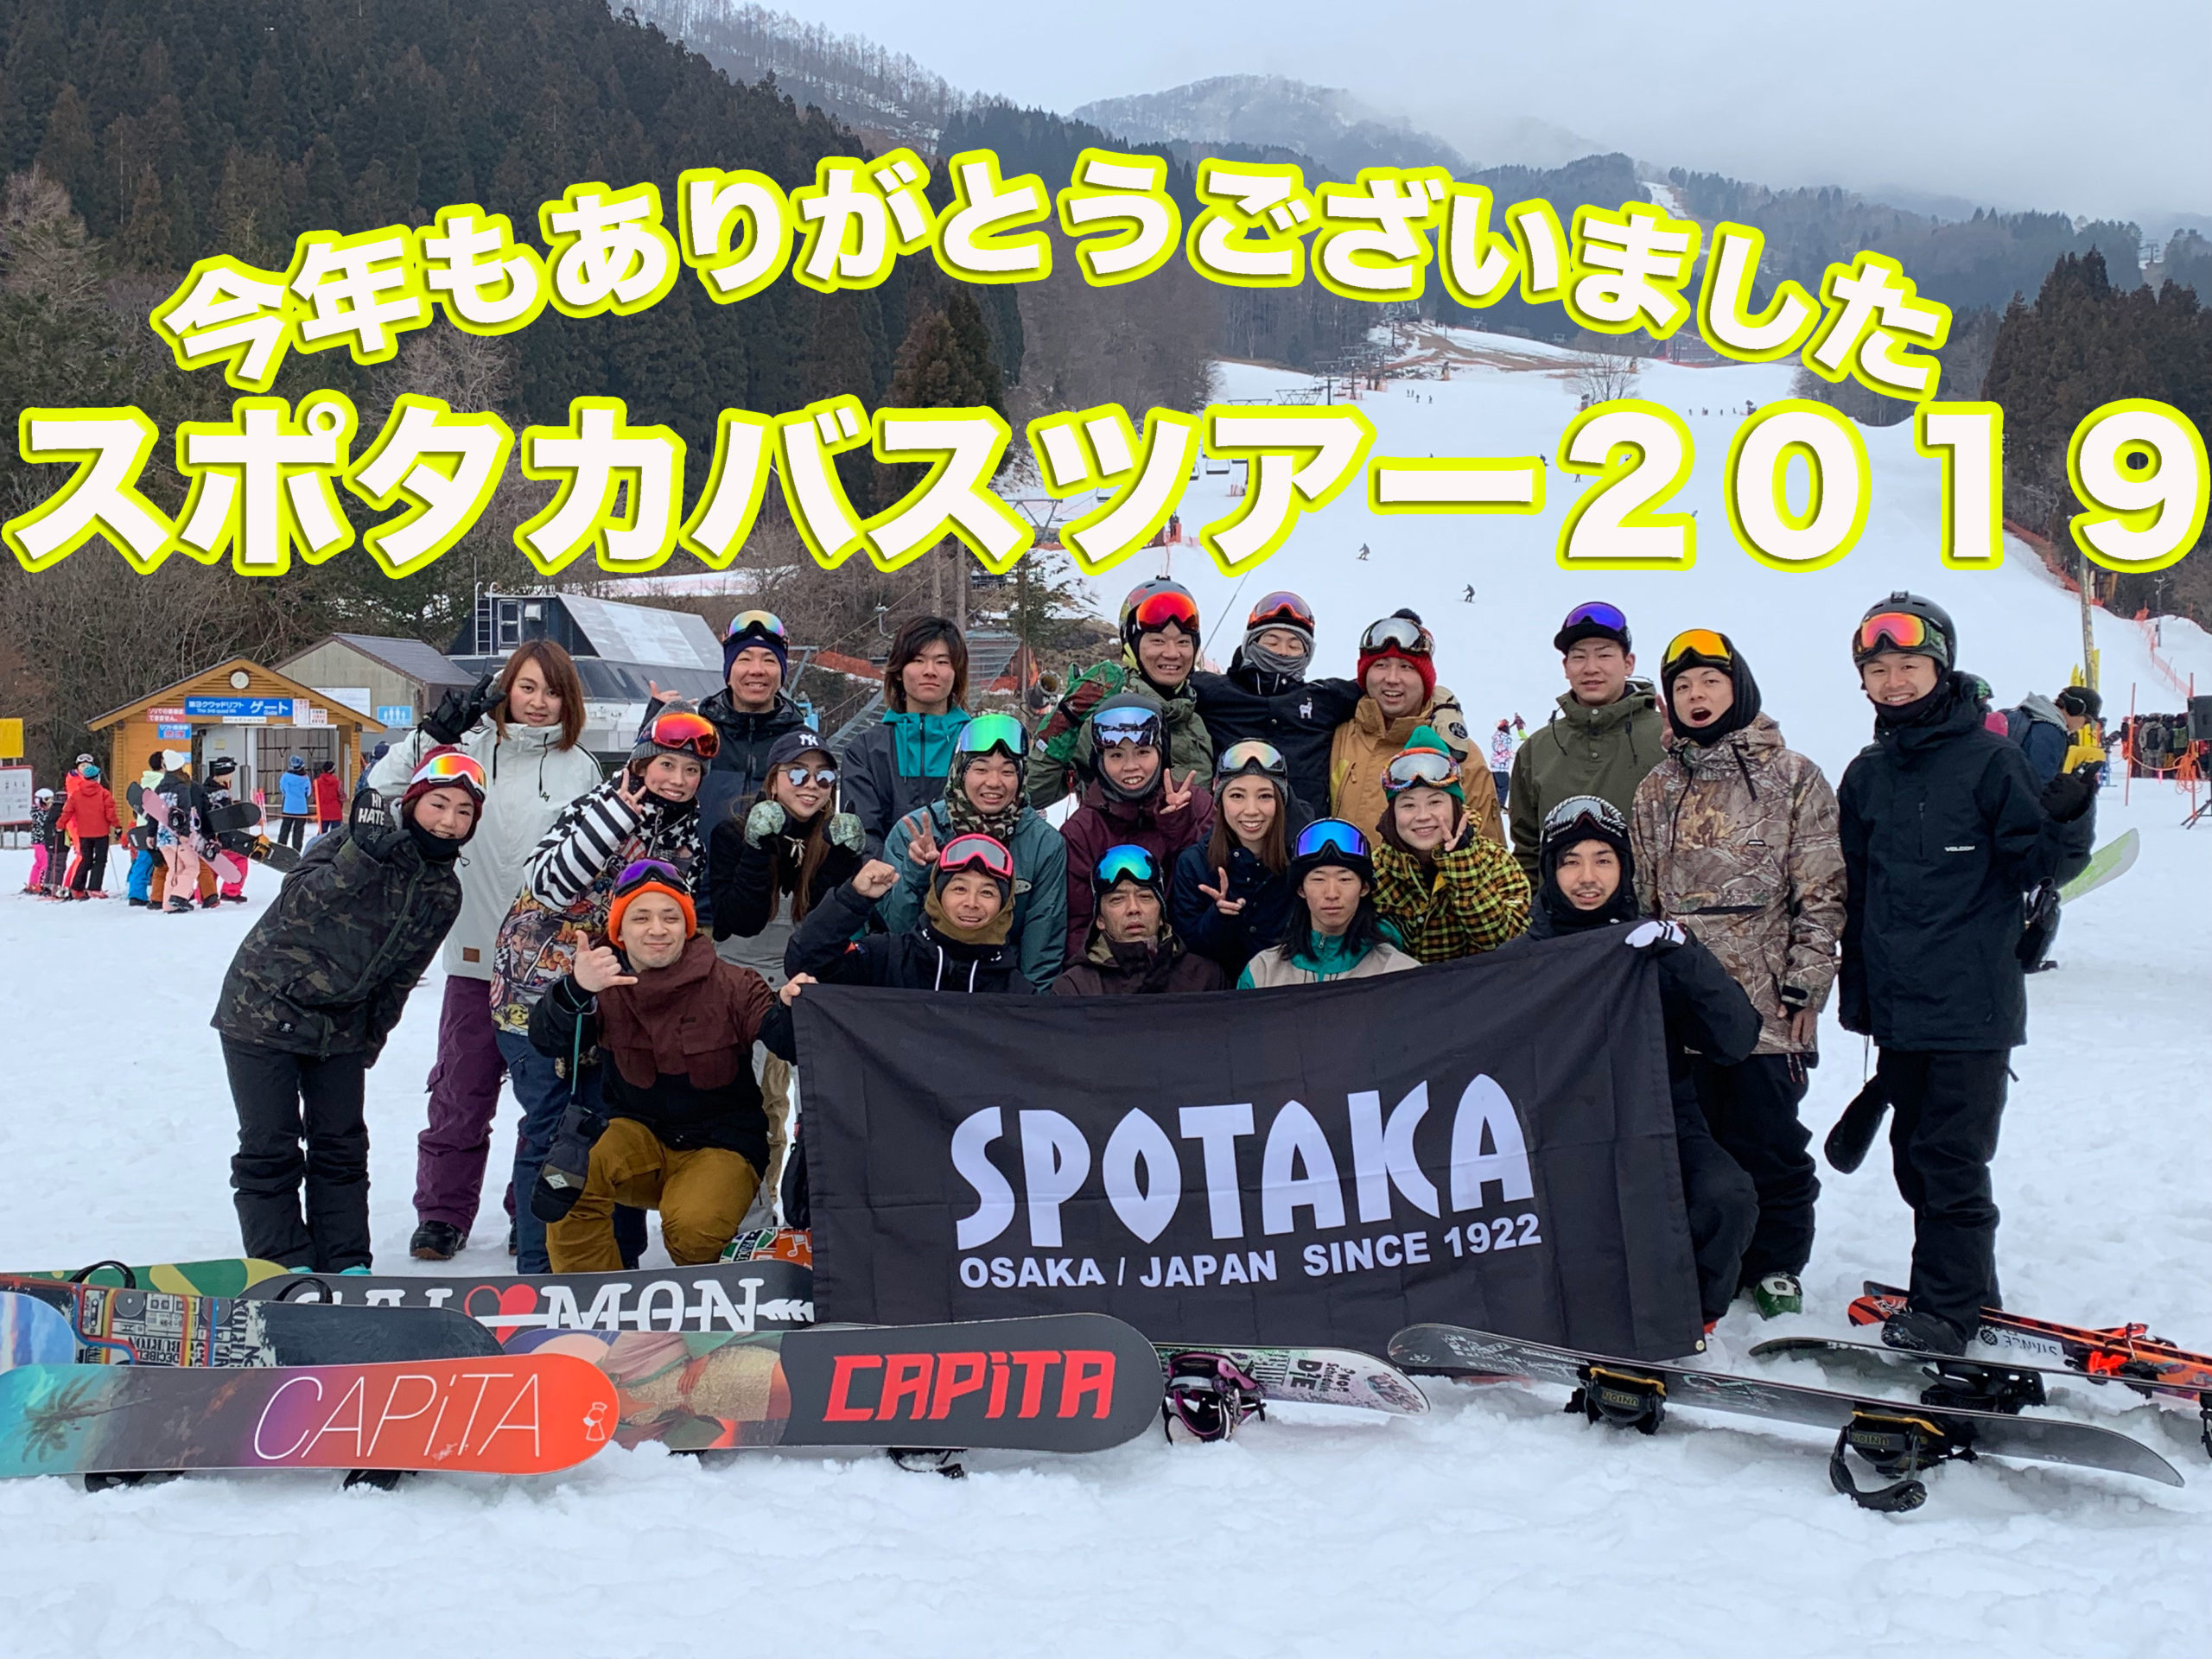 SPOTAKA BUS TOUR 2019 ご参加いただいた皆様ありがとうございました。